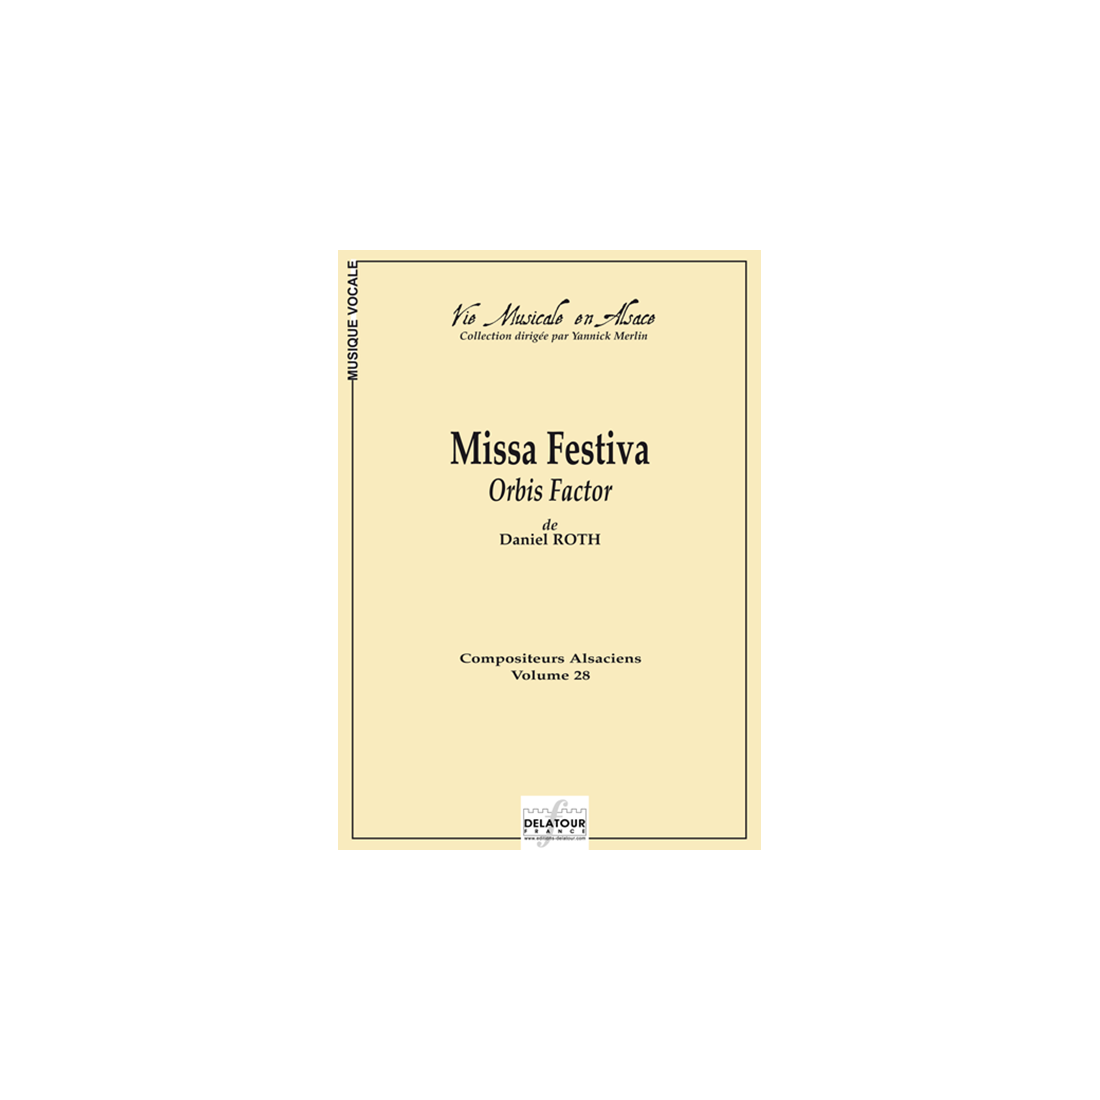 Missa Festiva Orbis factor (Chor Partitur)